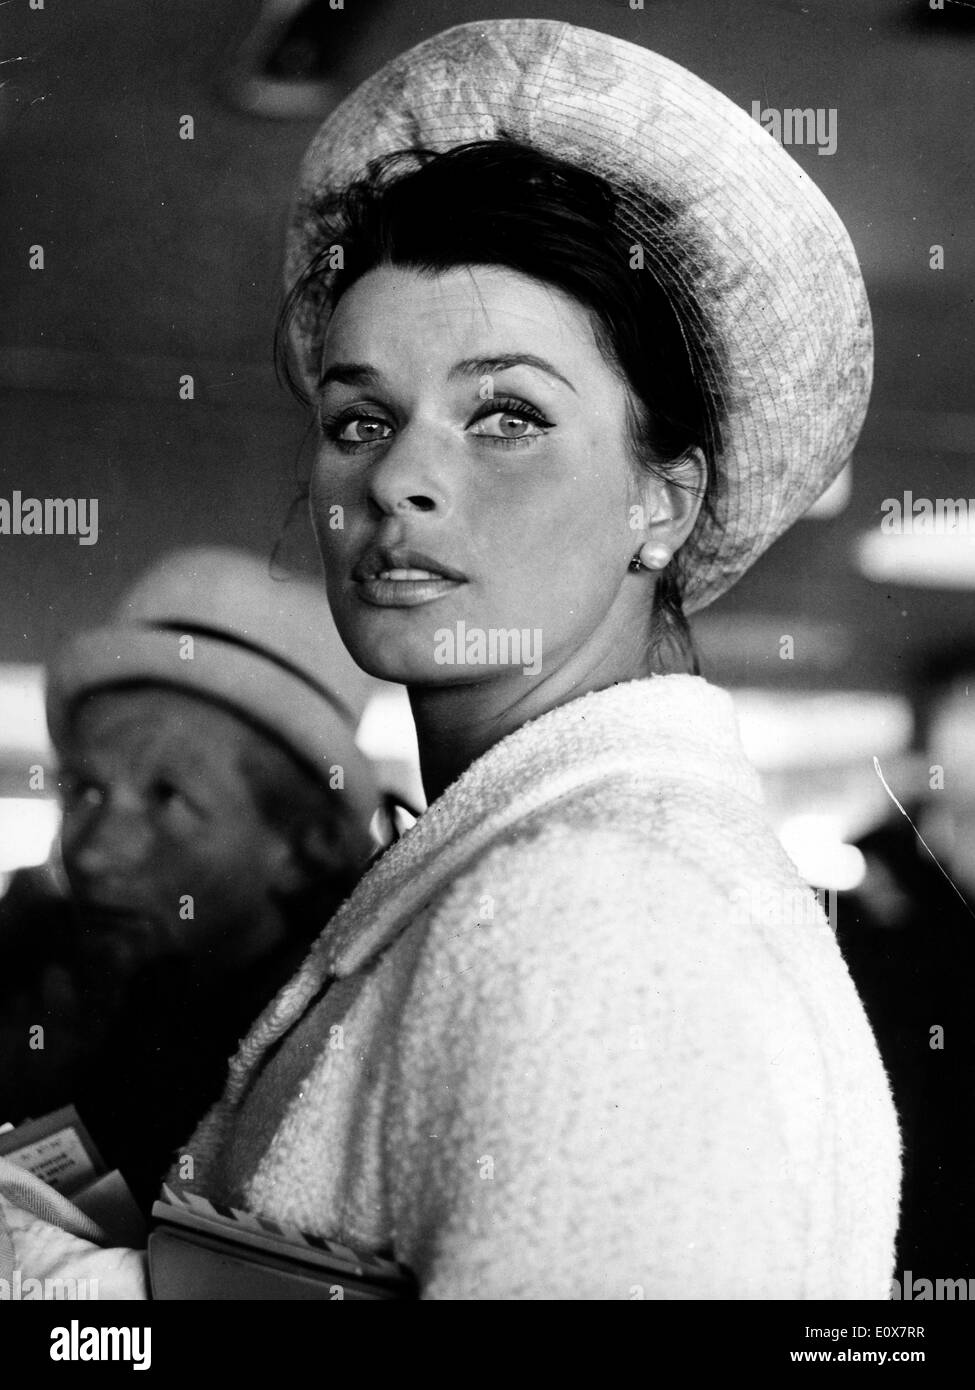 Senta berger austrian film actress Imágenes de stock en blanco y negro ...